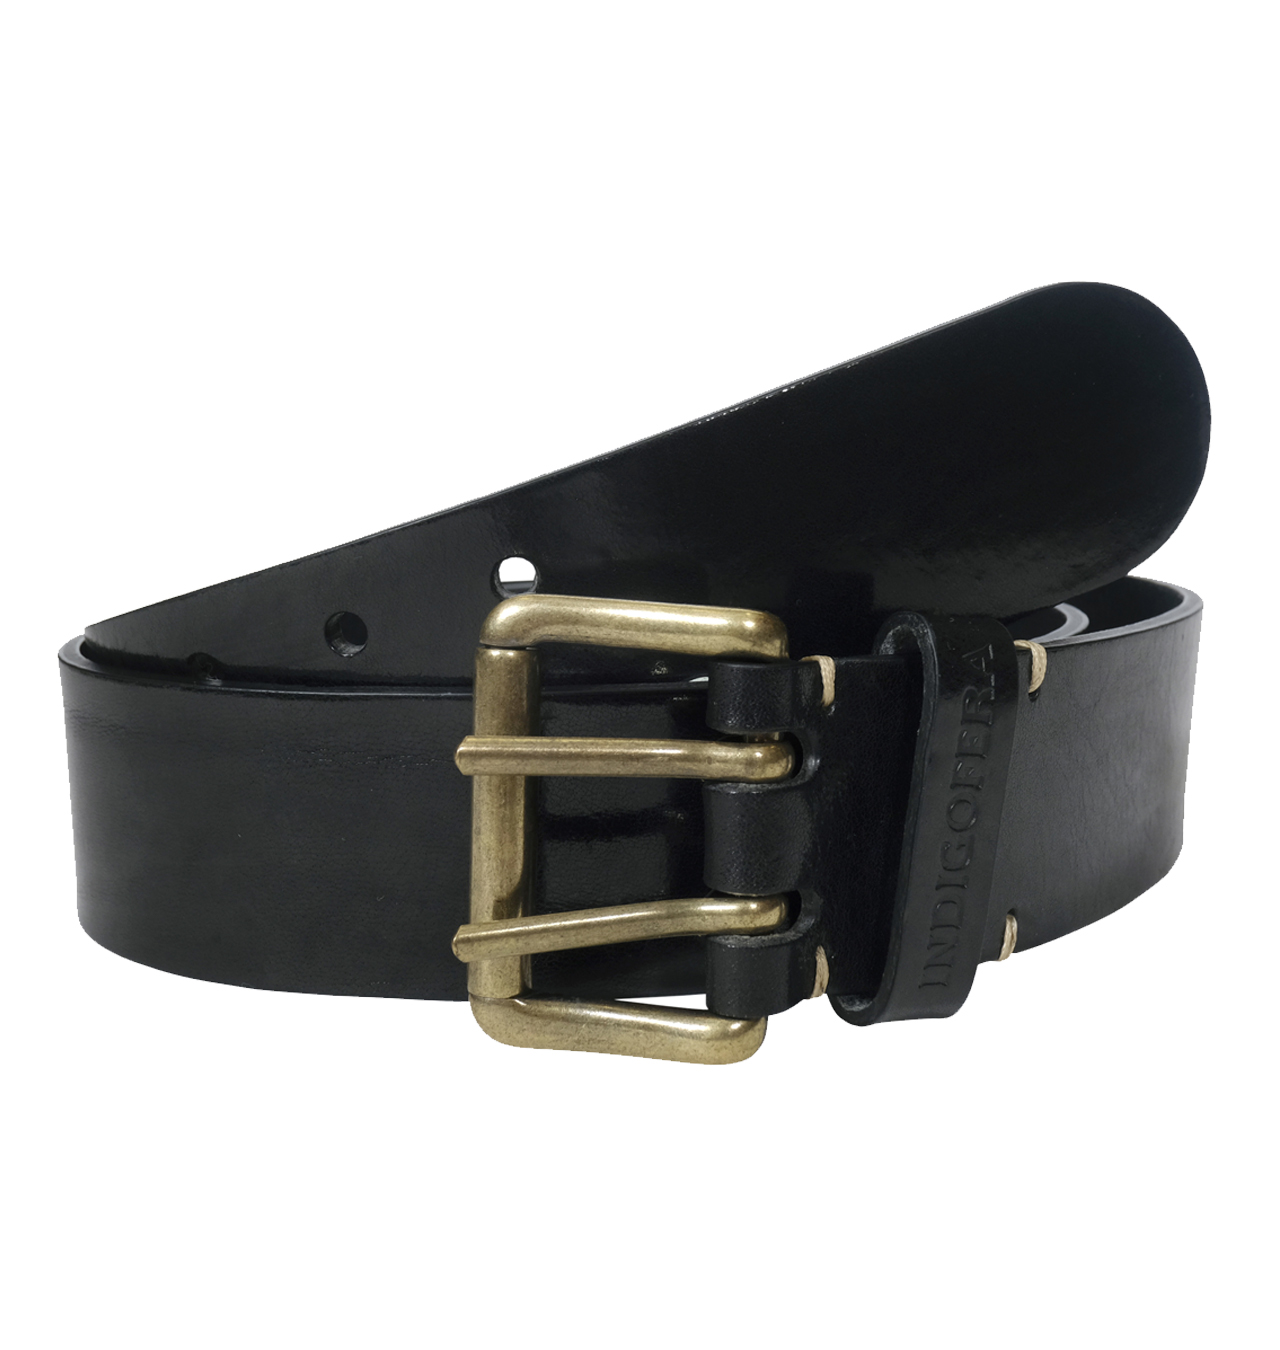 Indigofera - Danko Leather Belt 2-prong - Black